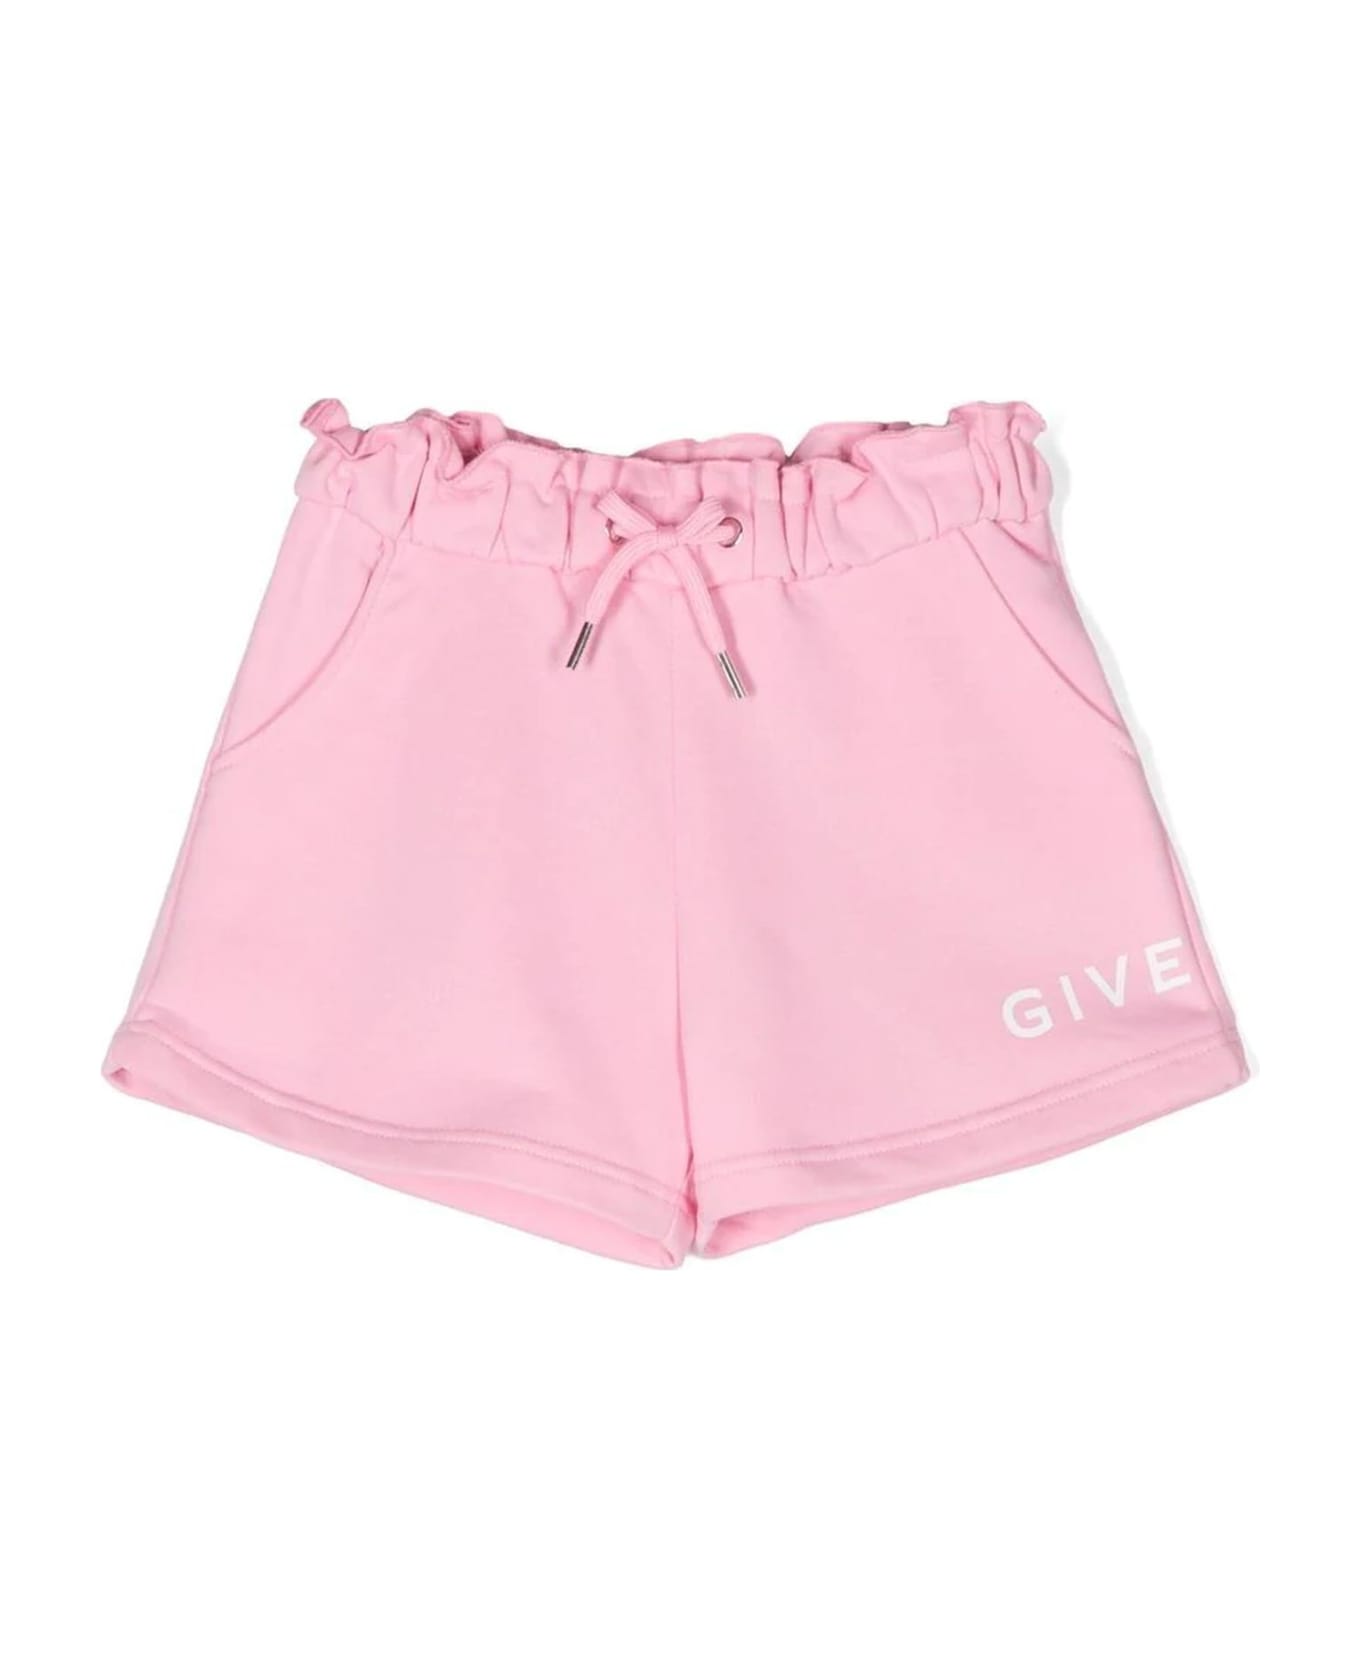 Givenchy Kids Shorts Pink - Pink ボトムス